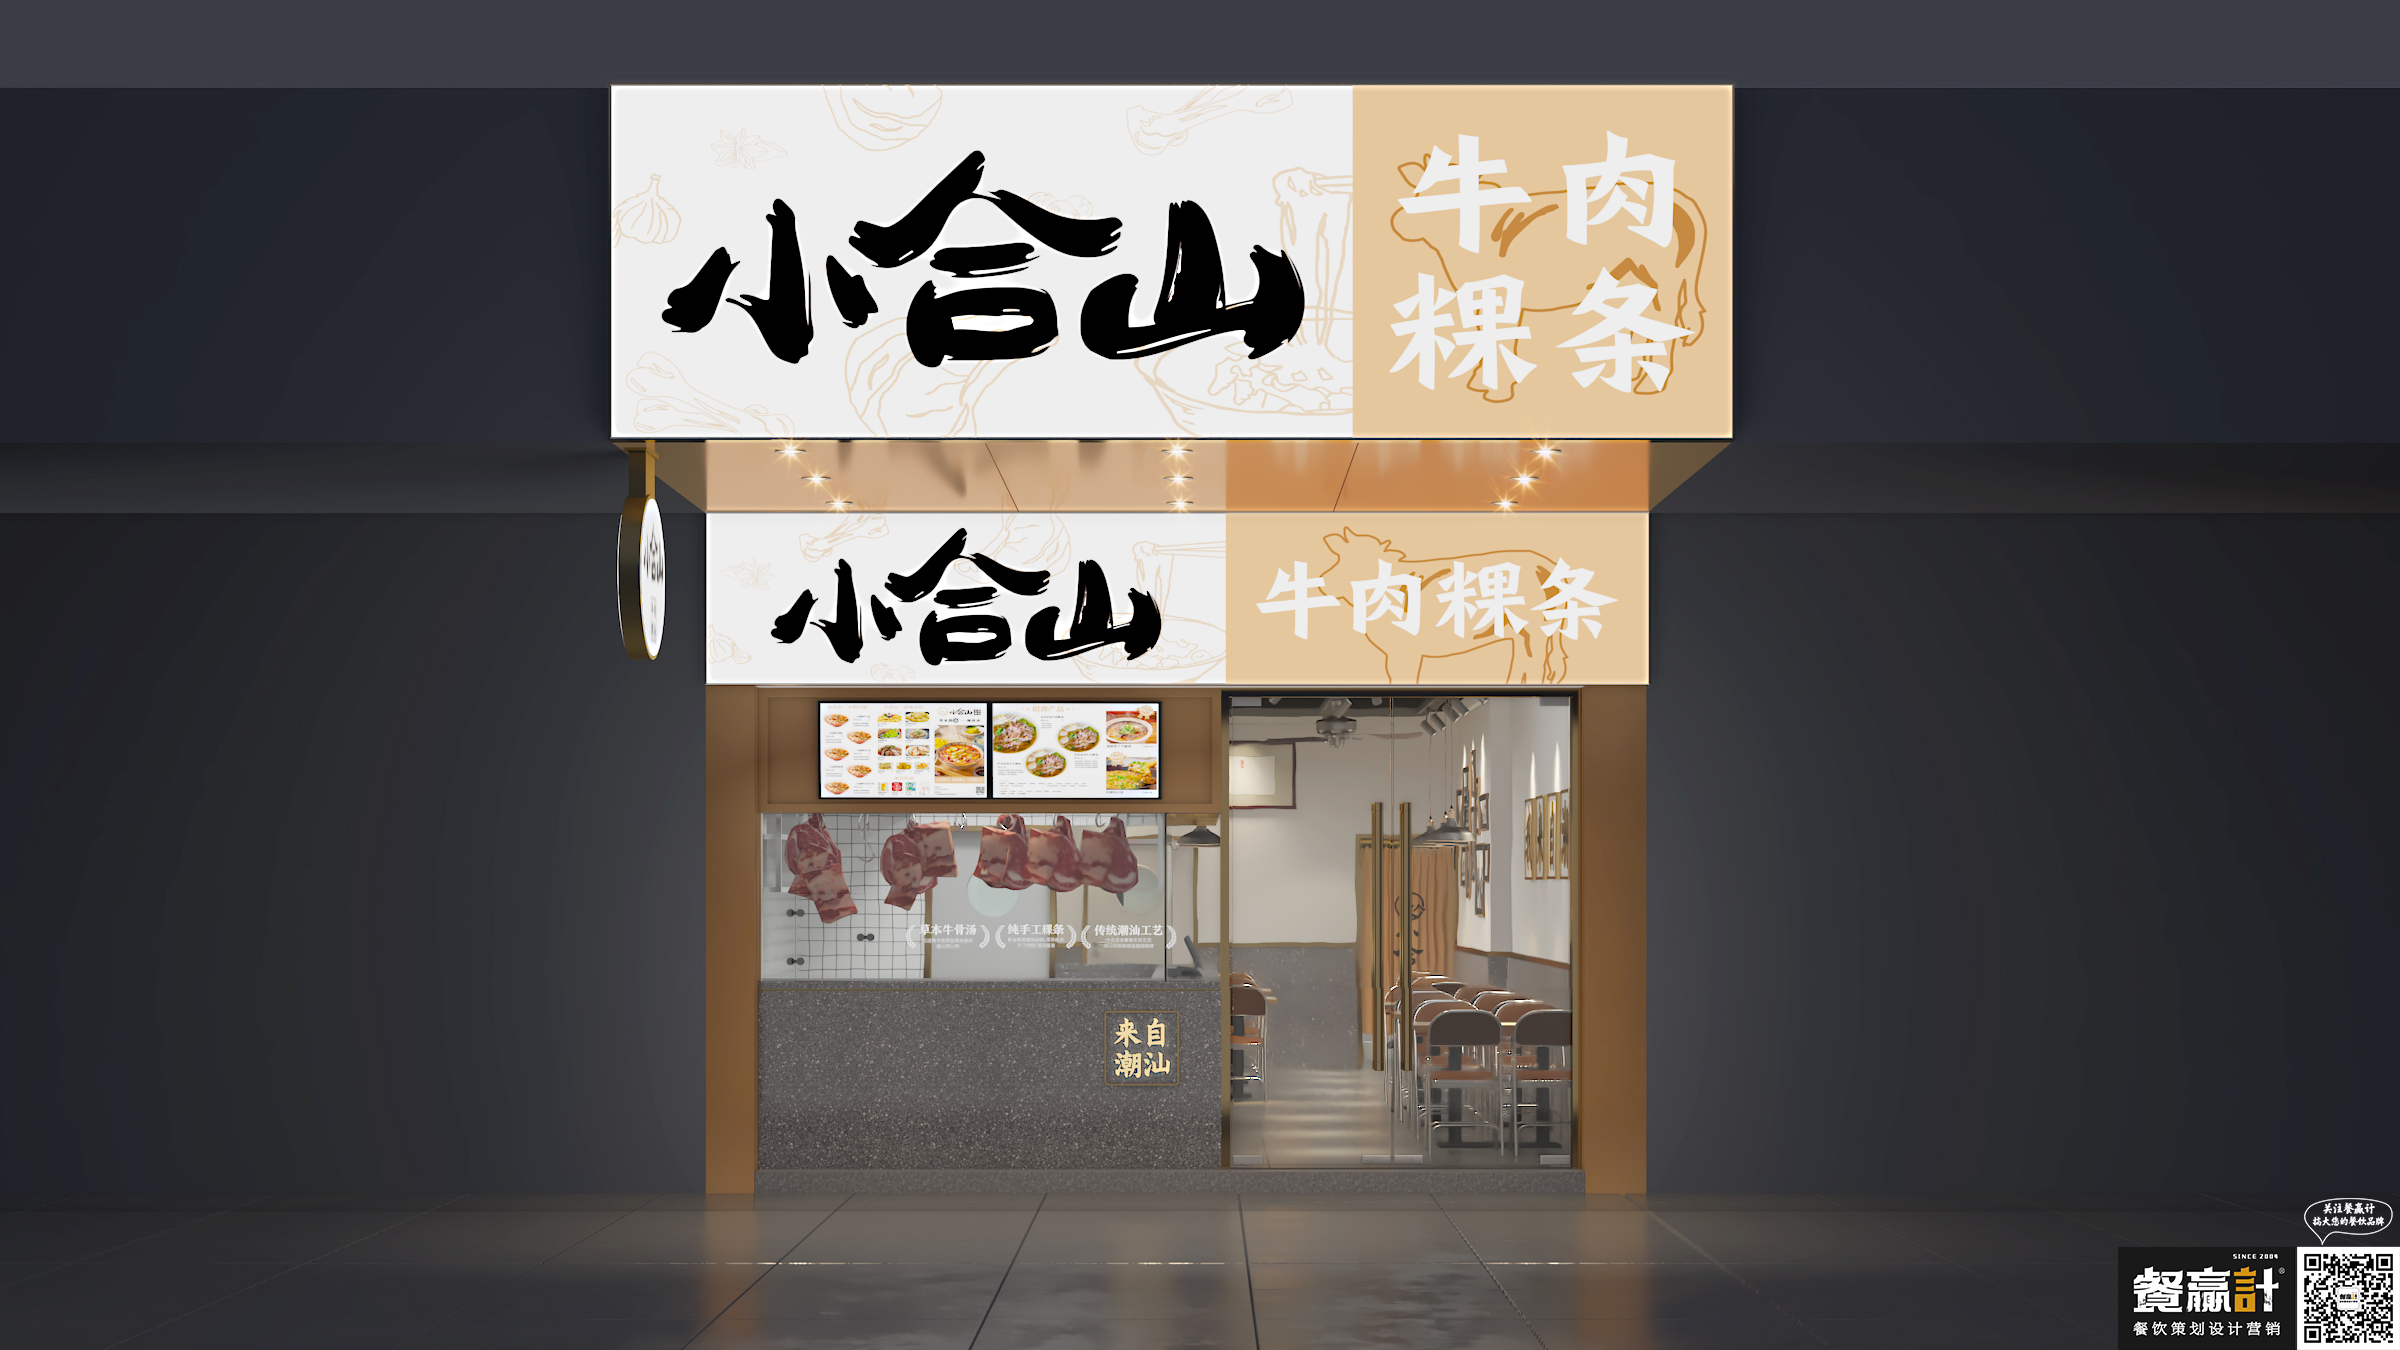 灵川小合山——牛肉粿条餐厅空间设计